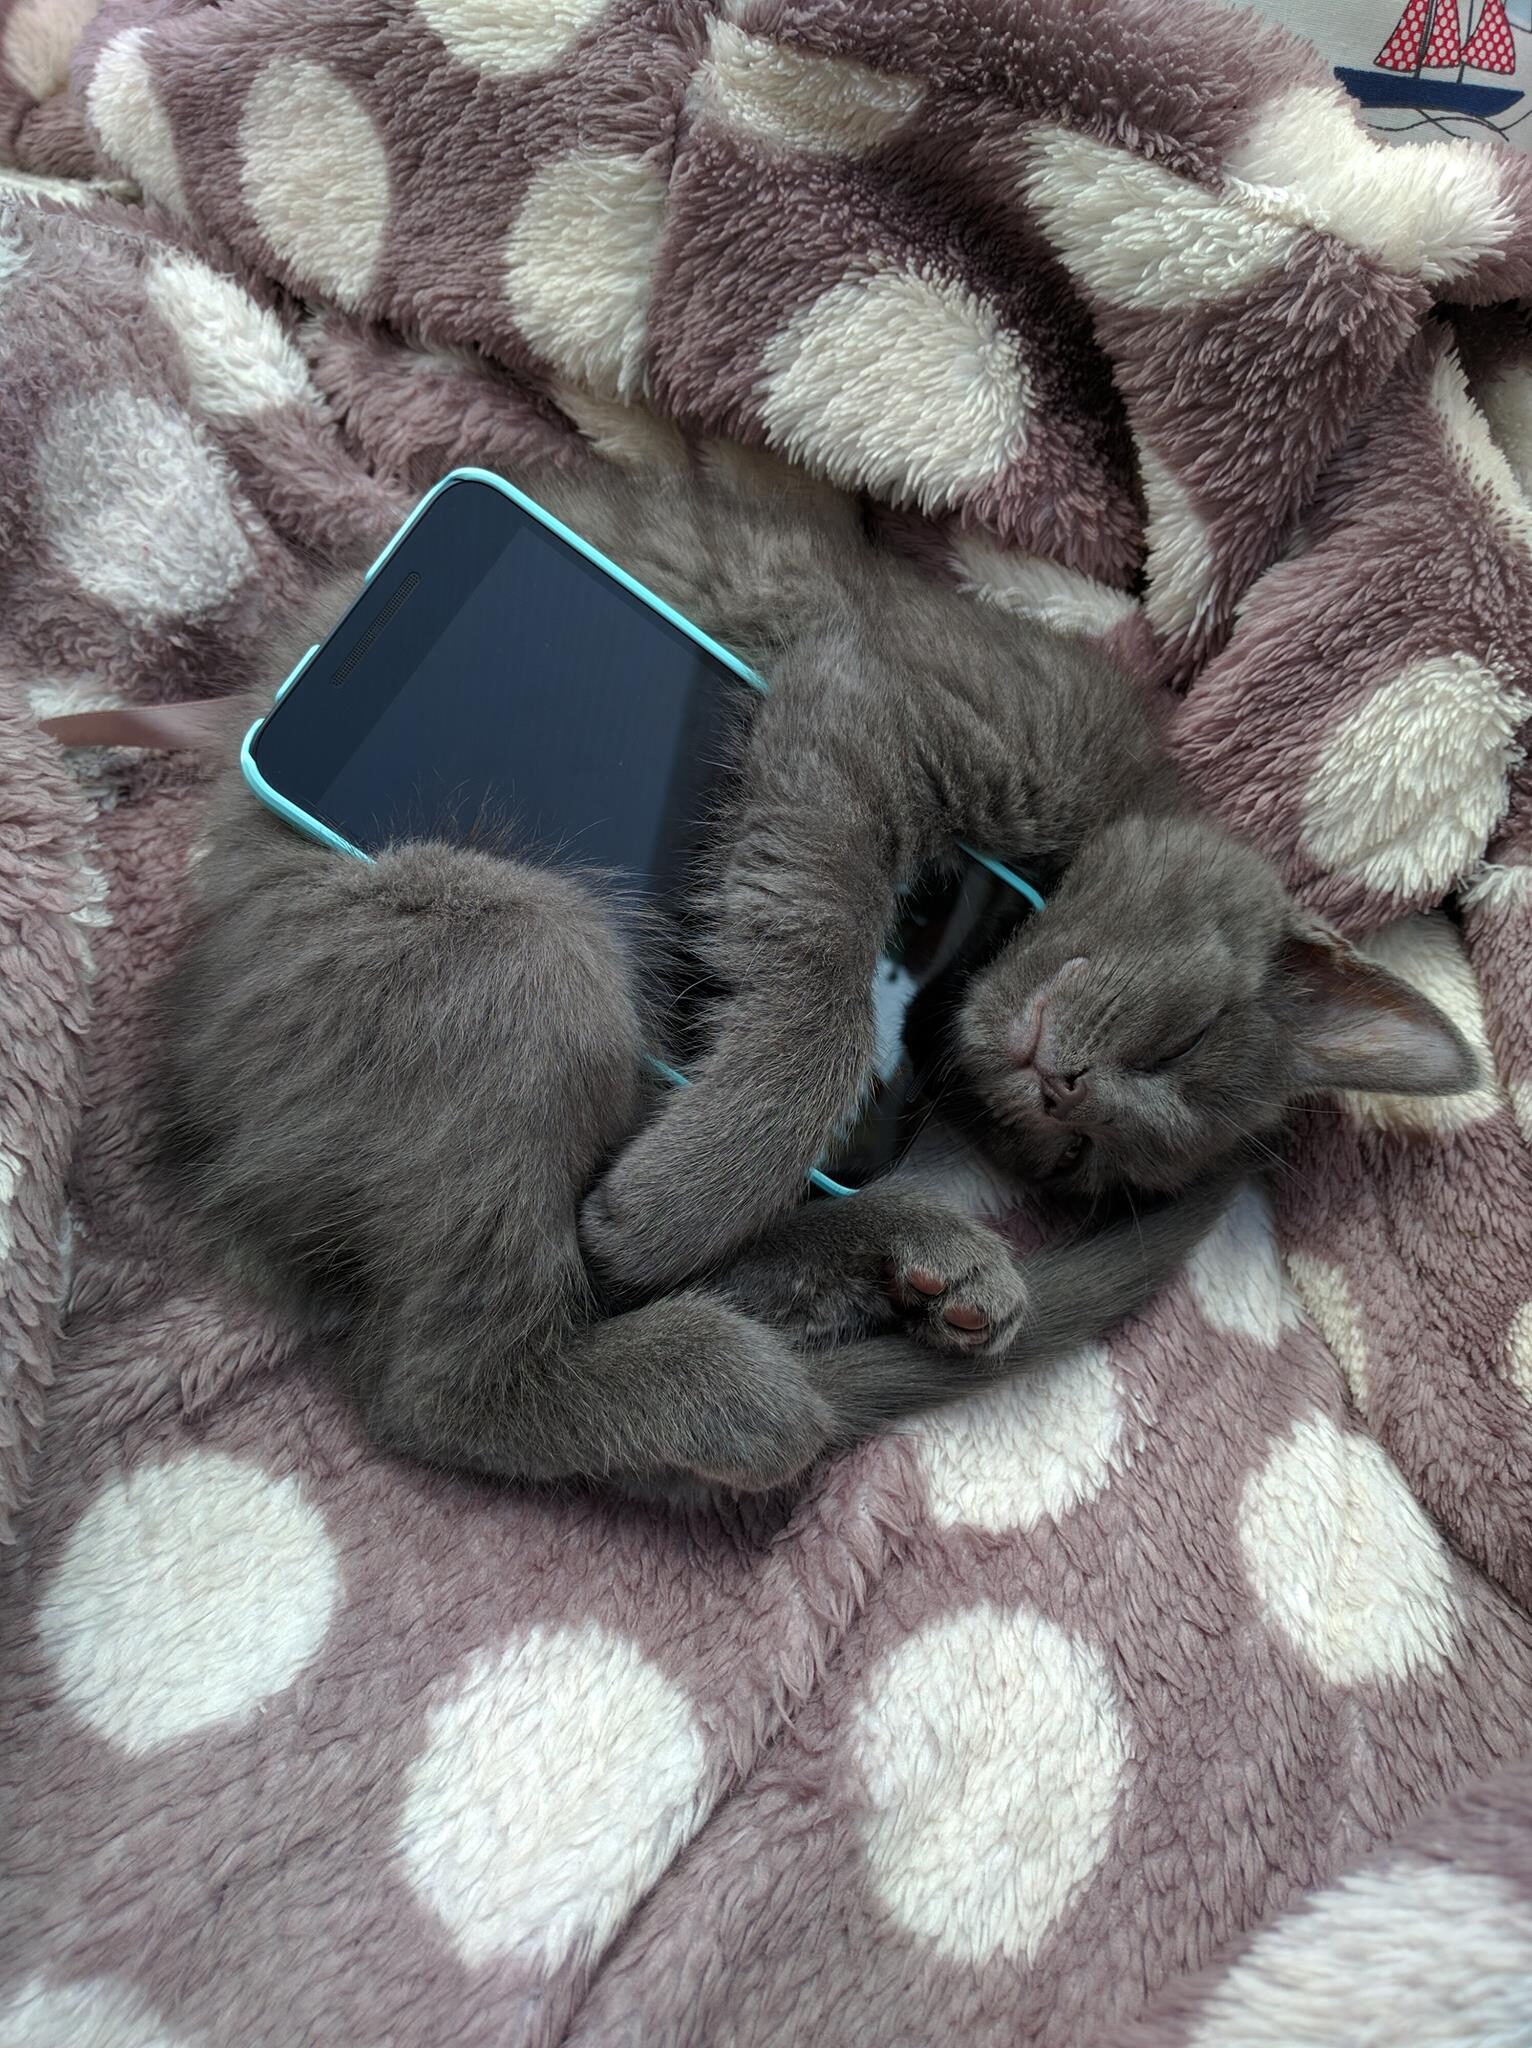 Dark gray cat sleeps clutching smartphone.